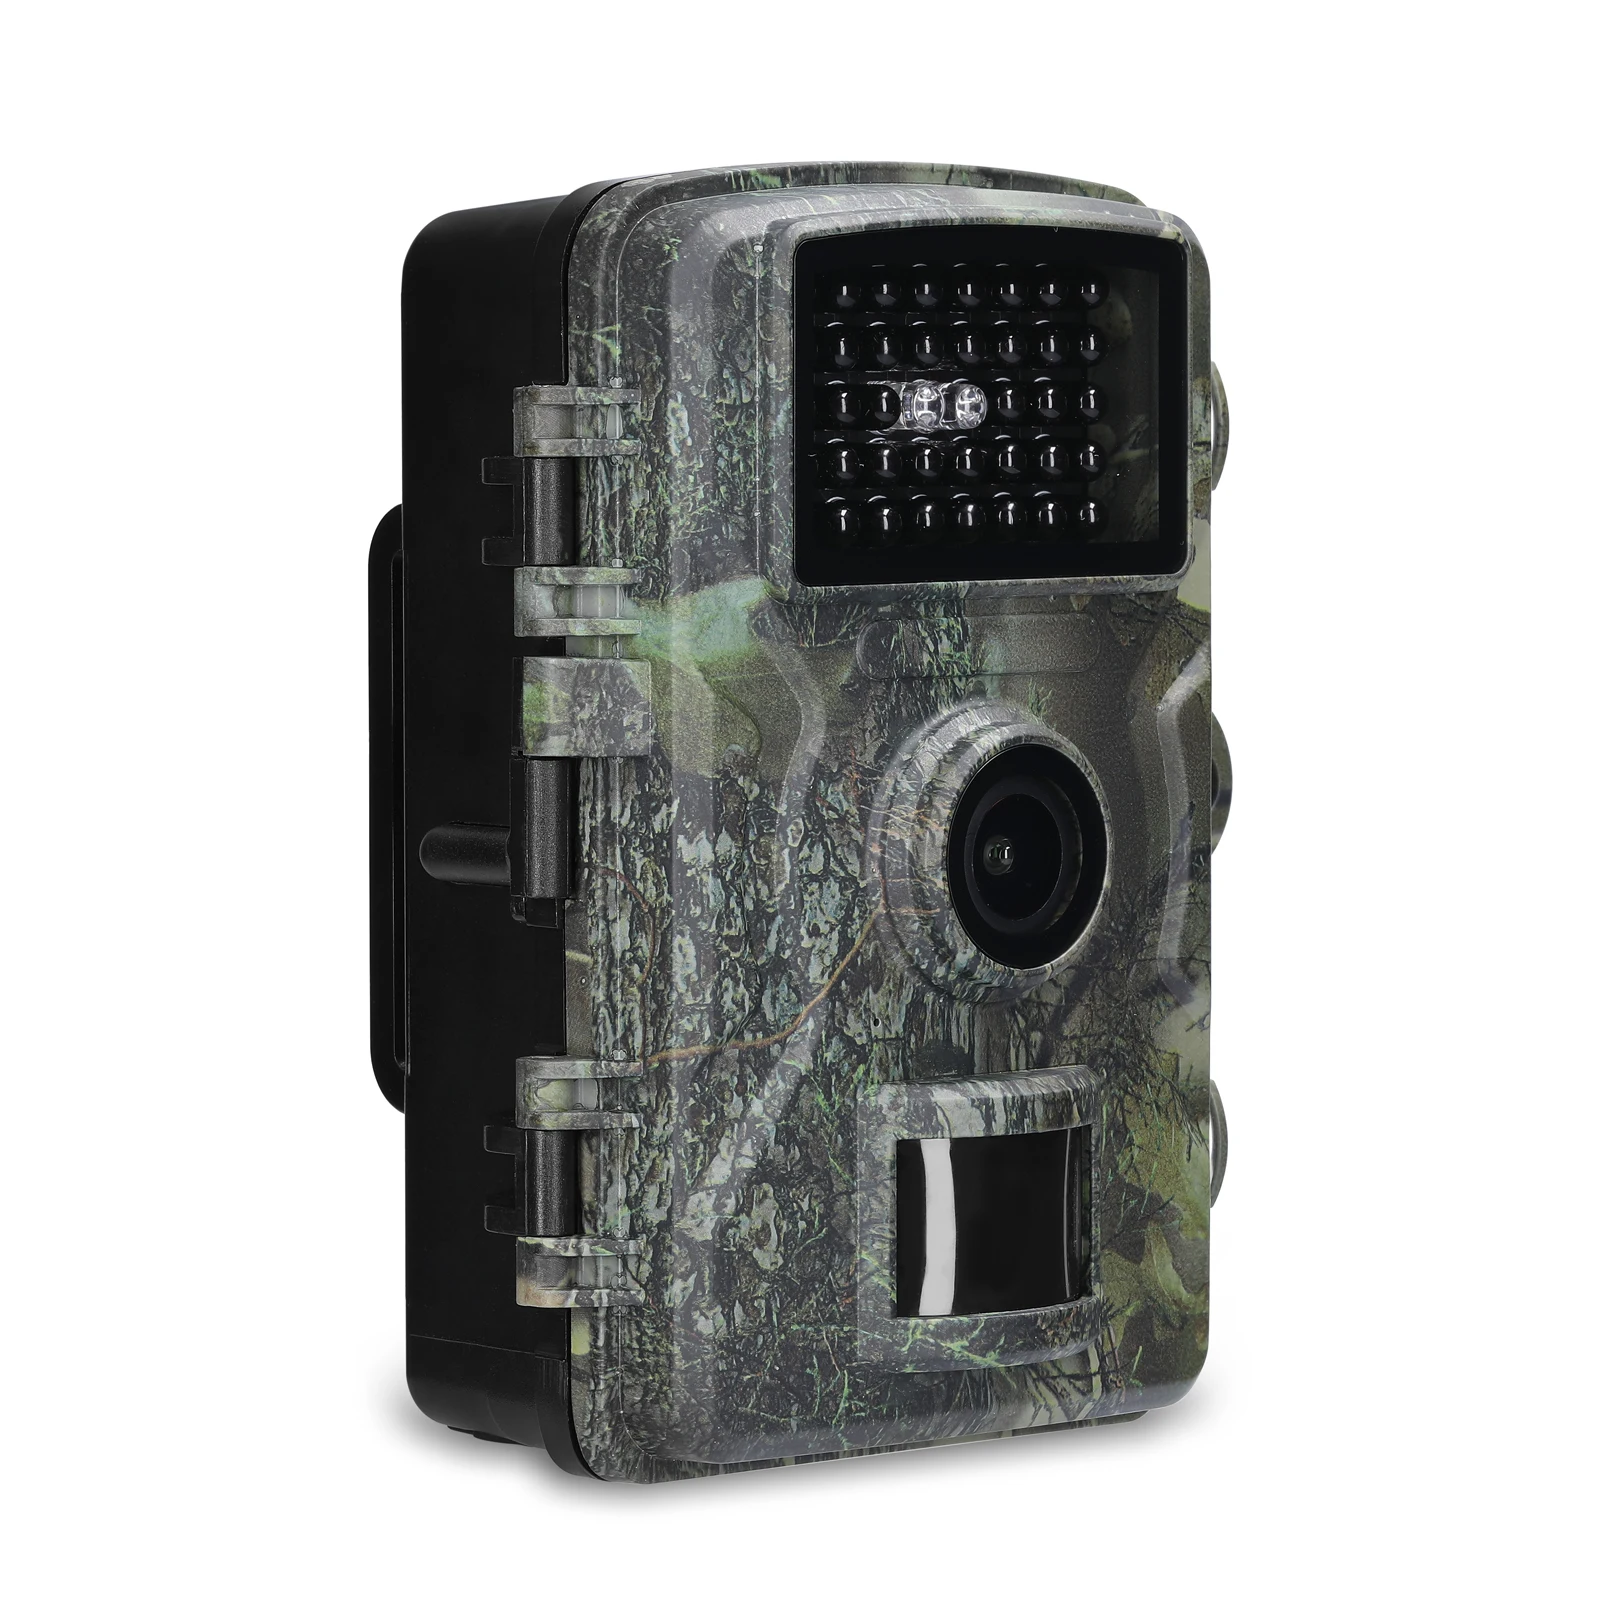 

Наружная камера 16 МП 1080P, инфракрасная камера с обнаружением поля, цветной дисплей 2,0 дюйма TFT, для дневного и ночного использования, Охотничь...